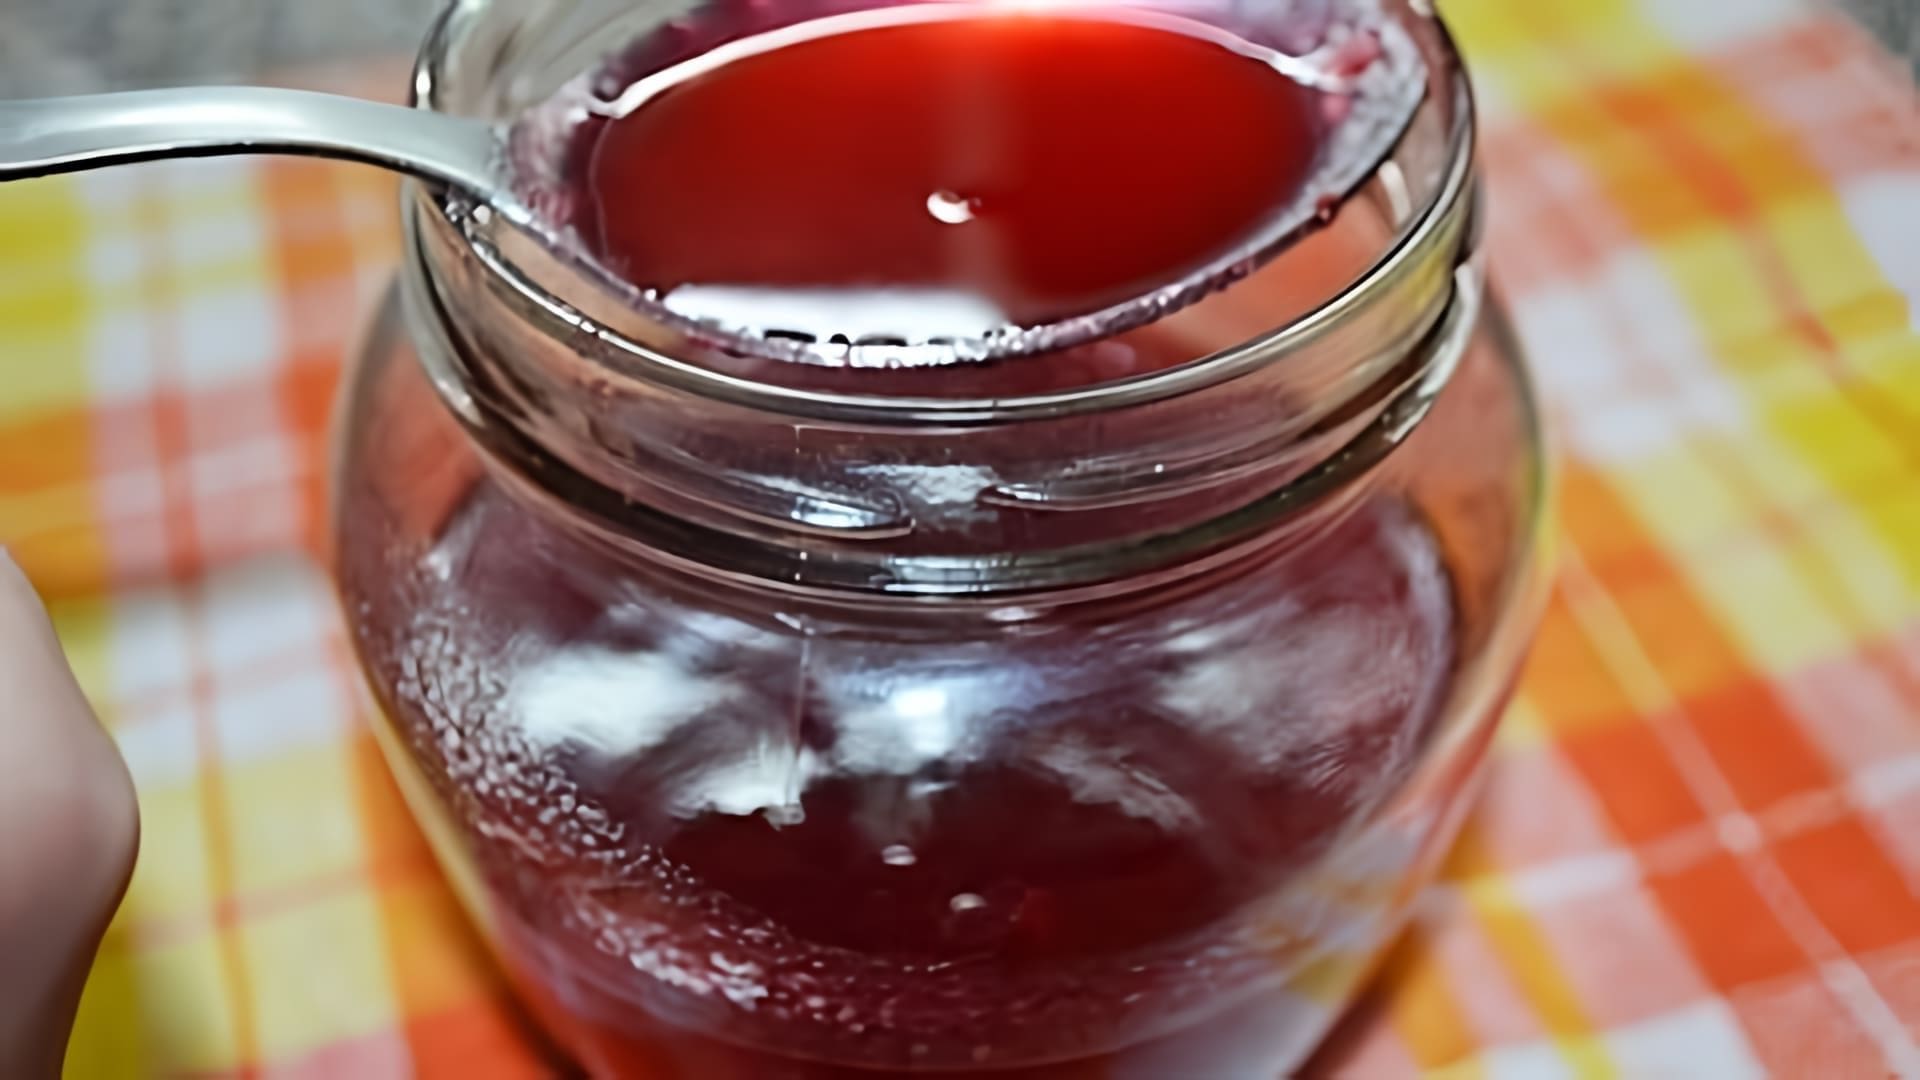 В этом видео демонстрируется рецепт приготовления лечебного лакомства "Калина с медом"